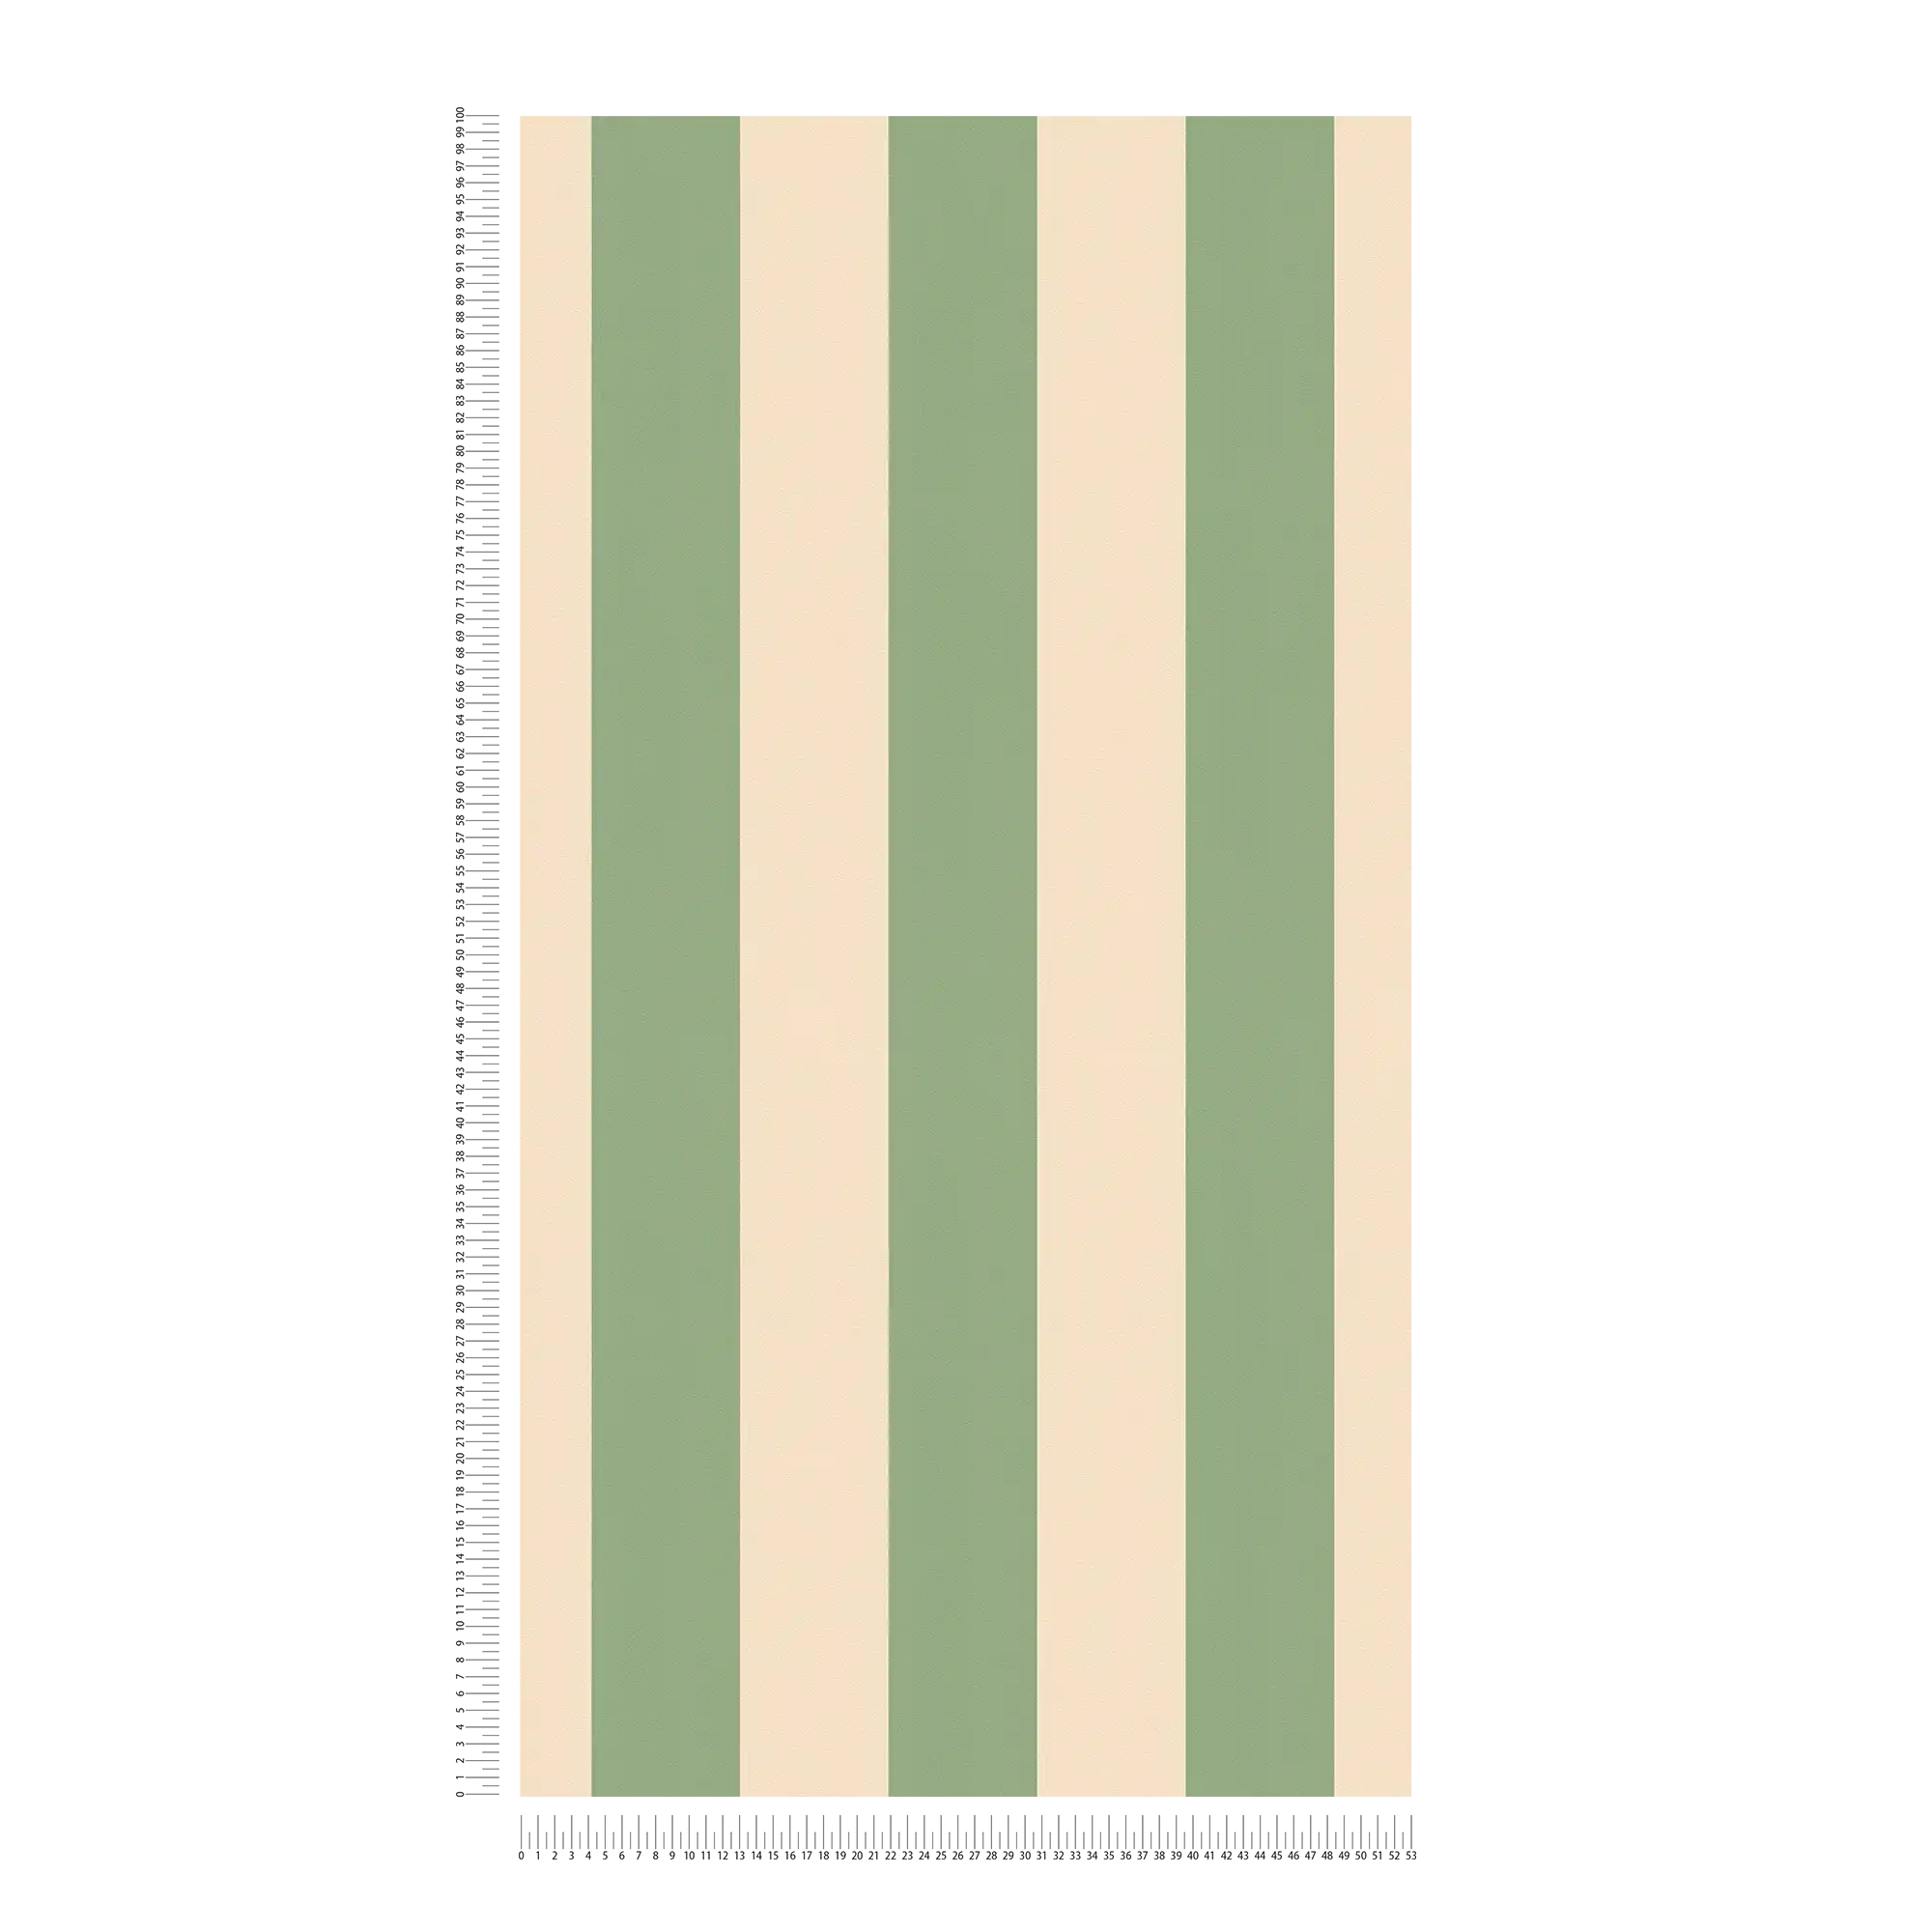             Vliesbehang met blokstrepen en lichte structuur - beige, groen
        